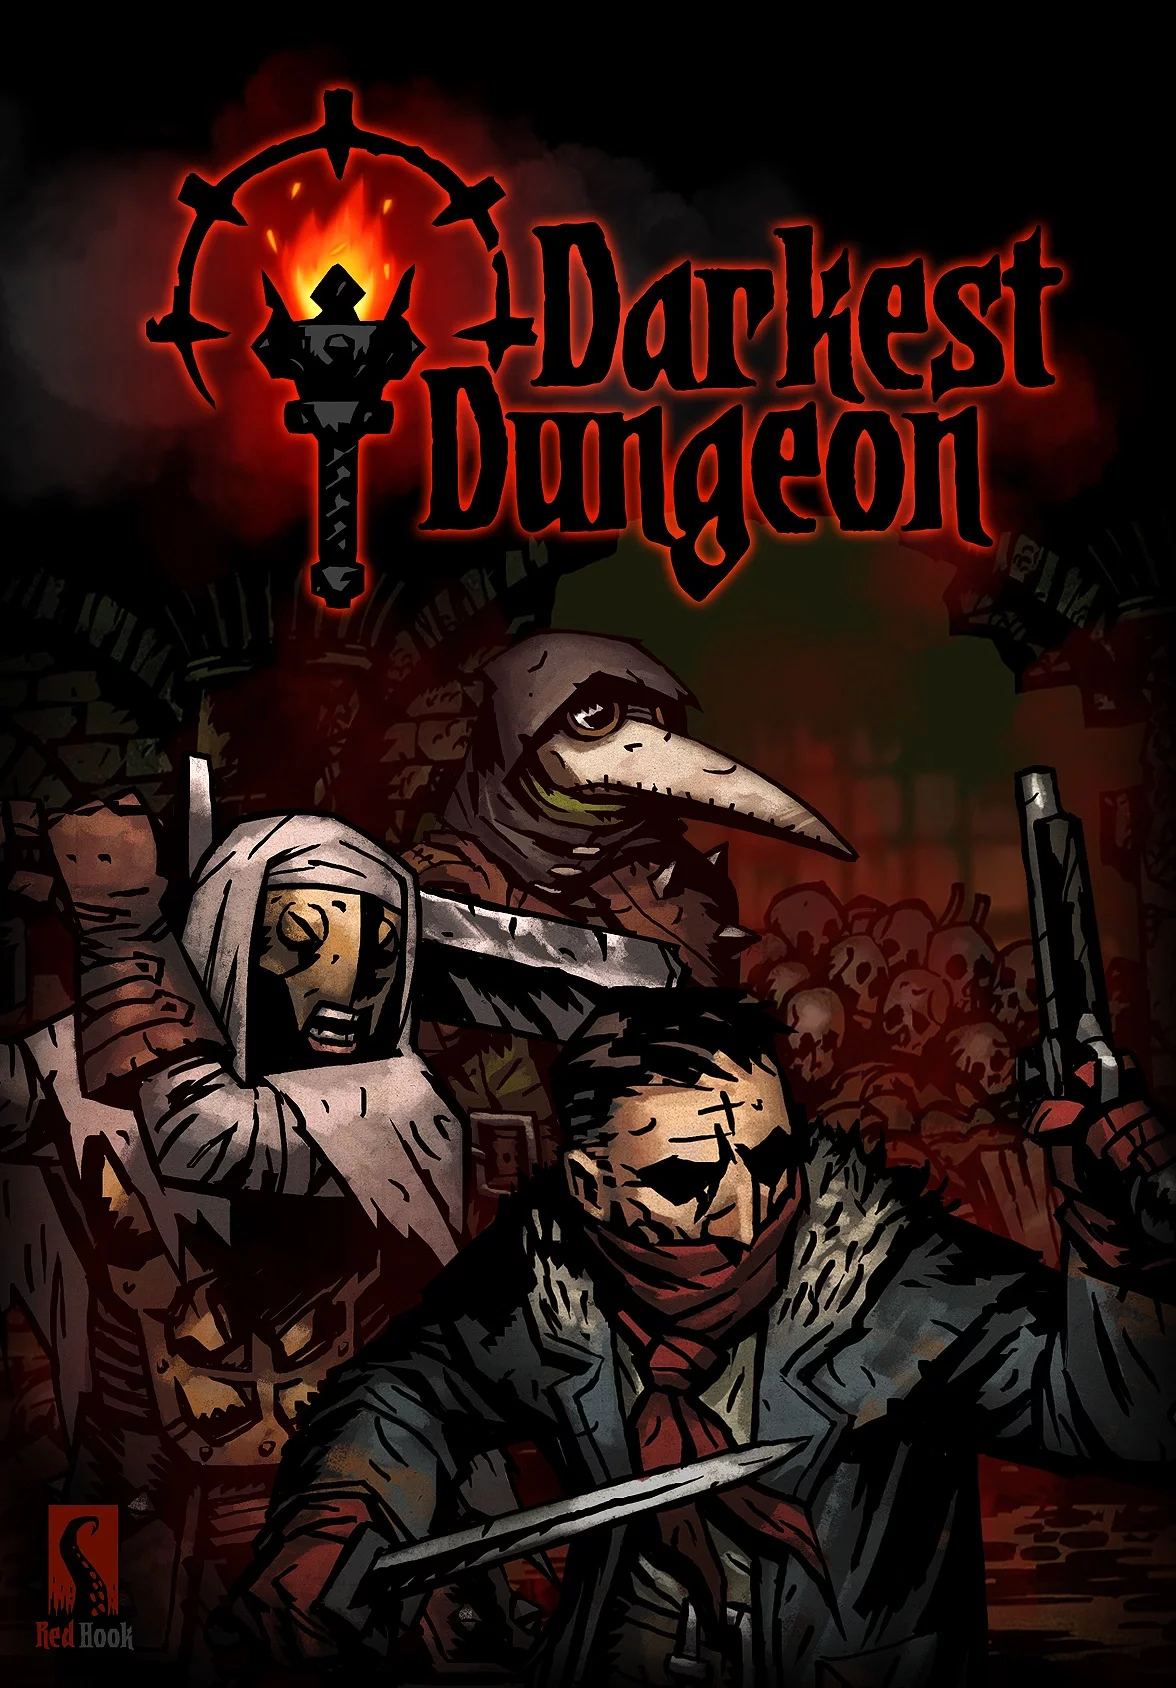 Darkest Dungeon v.24839 (28859) [GOG] (2016)